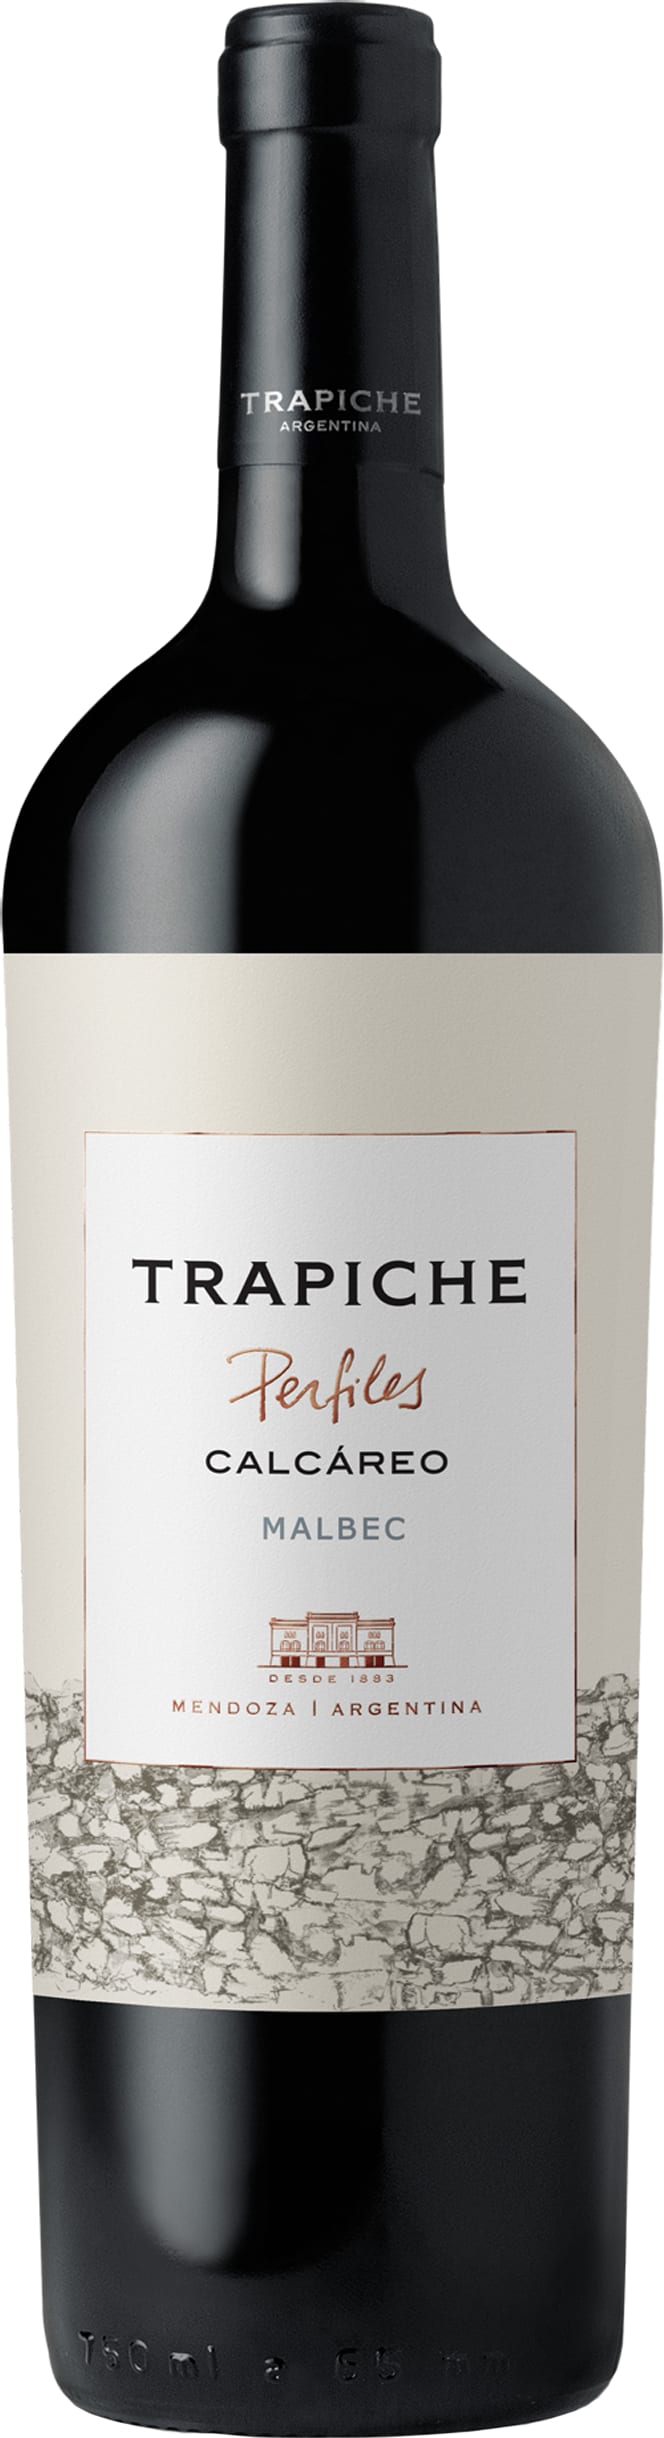 Trapiche Perfiles Malbec Calcareo 2018 75cl - Buy Trapiche Wines from GREAT WINES DIRECT wine shop